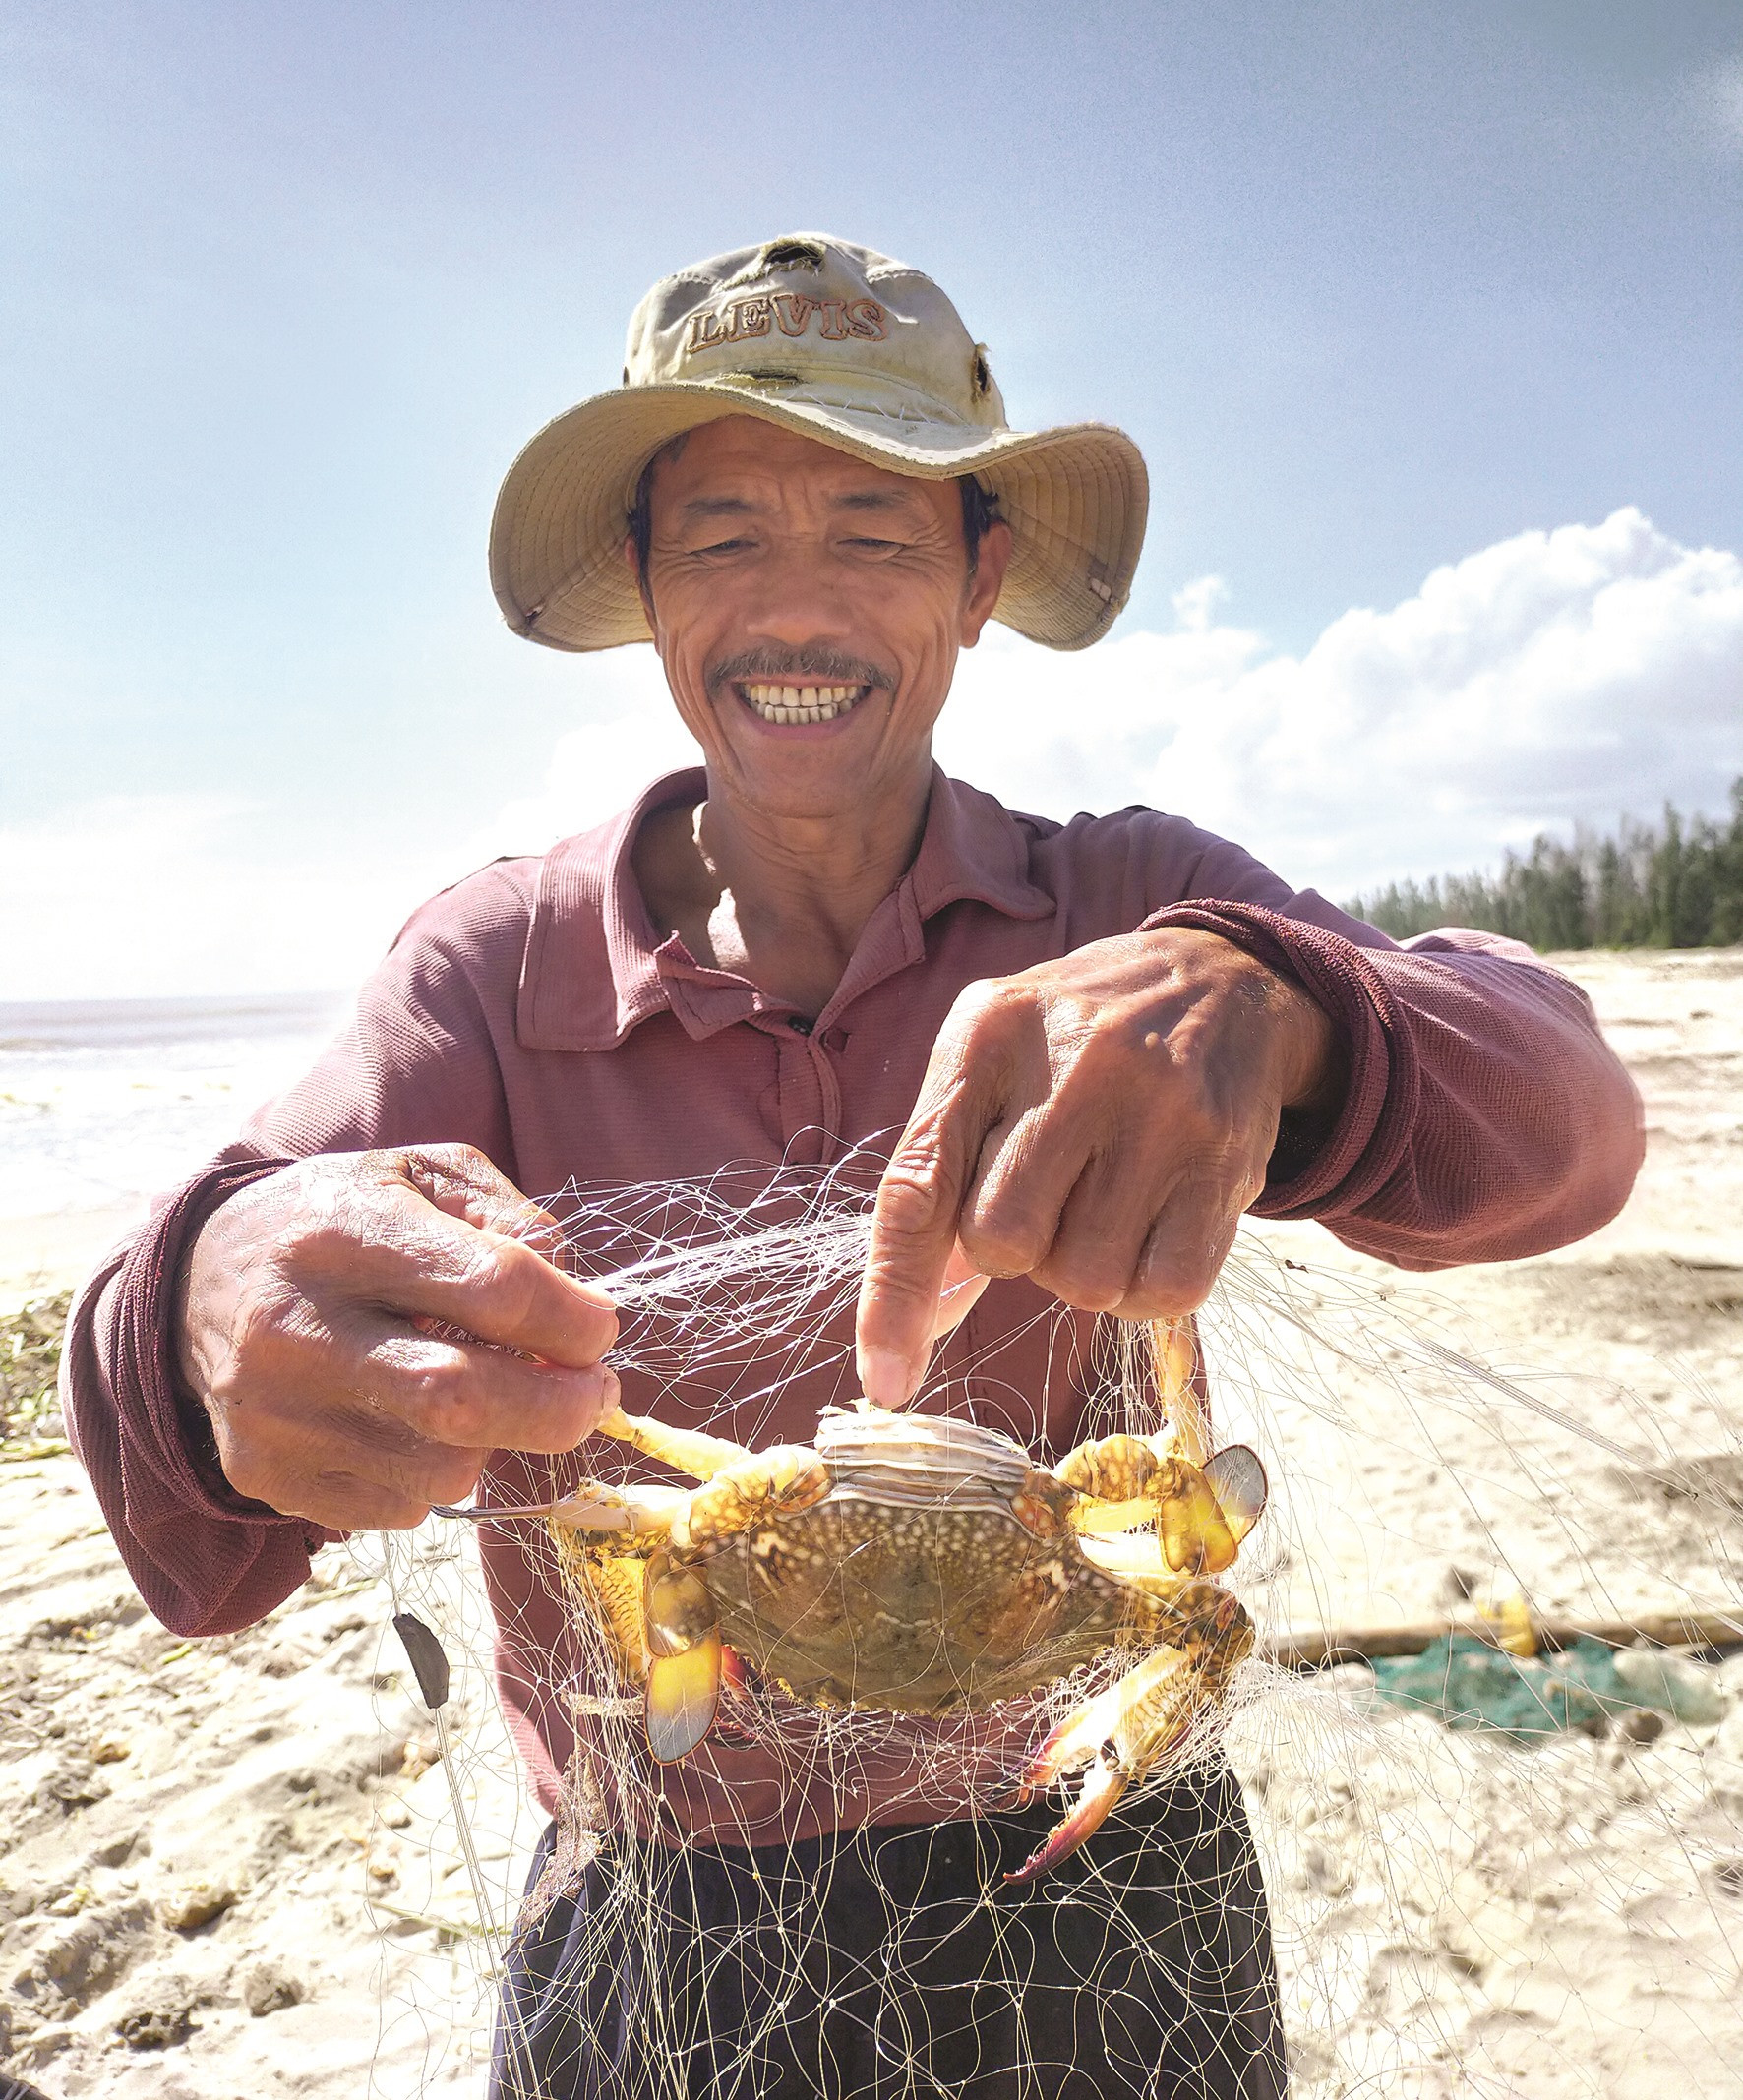 Mùa này nước nguồn về nên phong phú các loại hải sản ven bờ. Ông Nguyễn Văn Đồng đánh bắt được nhiều ghẹ hơn cá, ngoài ghẹ xanh, ghẹ 3 chấm, còn có ghẹ sò, giá mùa này dao động 200.000 đồng/kg.